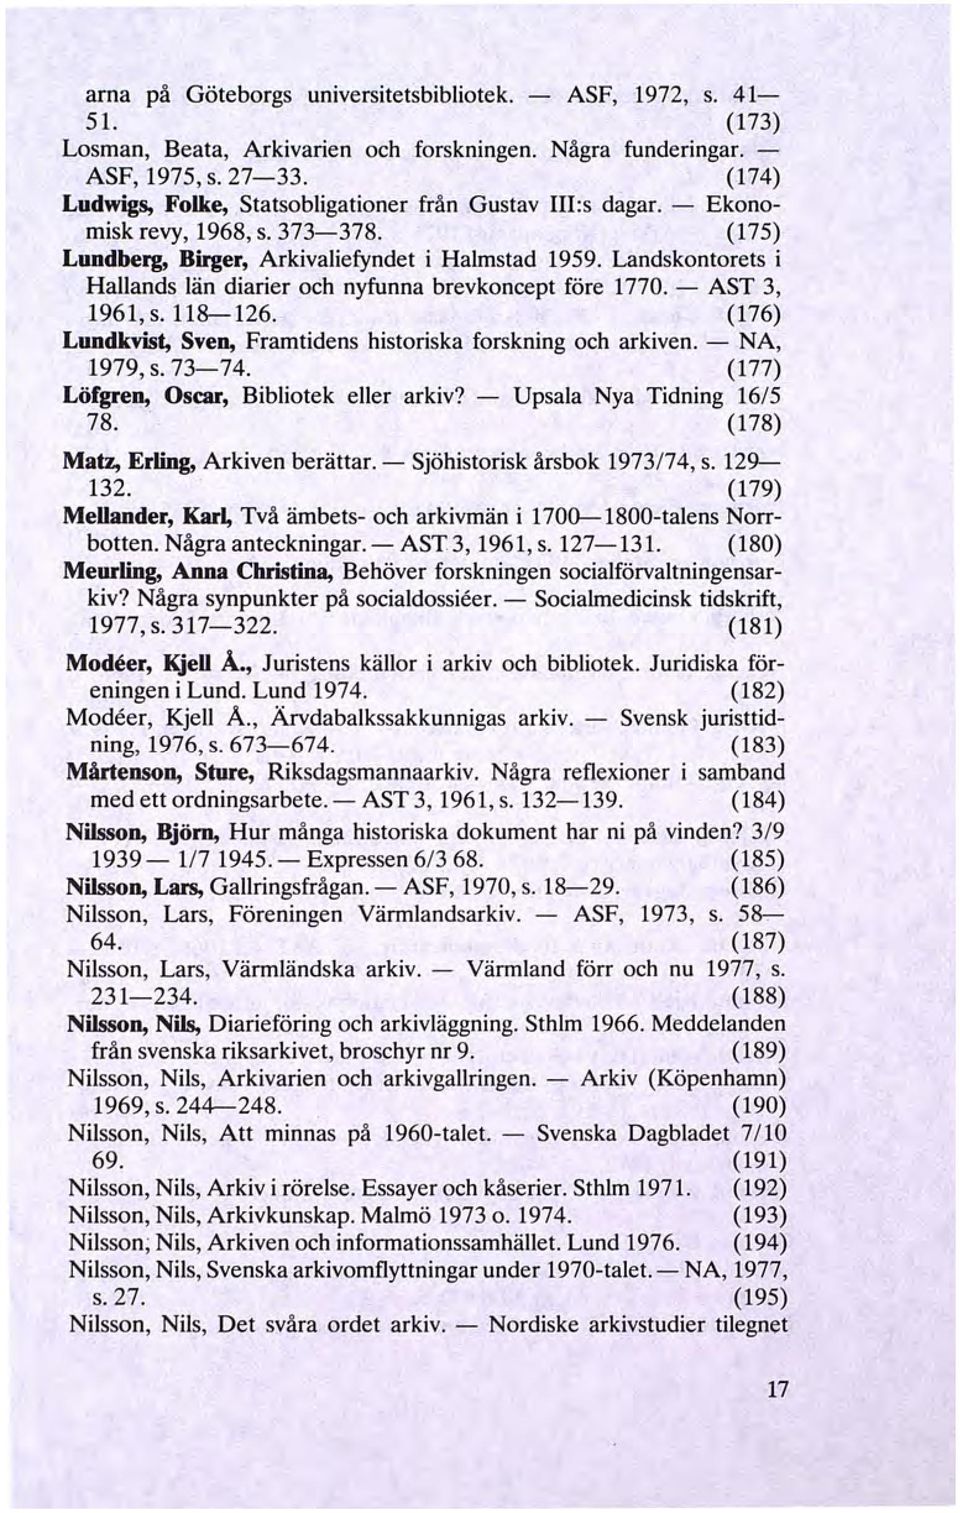 Landskontorets i Hallands län diarier och nyfunna brevkoncept före 1770. - AST 3, 1961, s. 118-126. (176) Lundkvist, Sven, Framtidens historiska forskning och arkiven. - NA, 1979, s. 73-74.